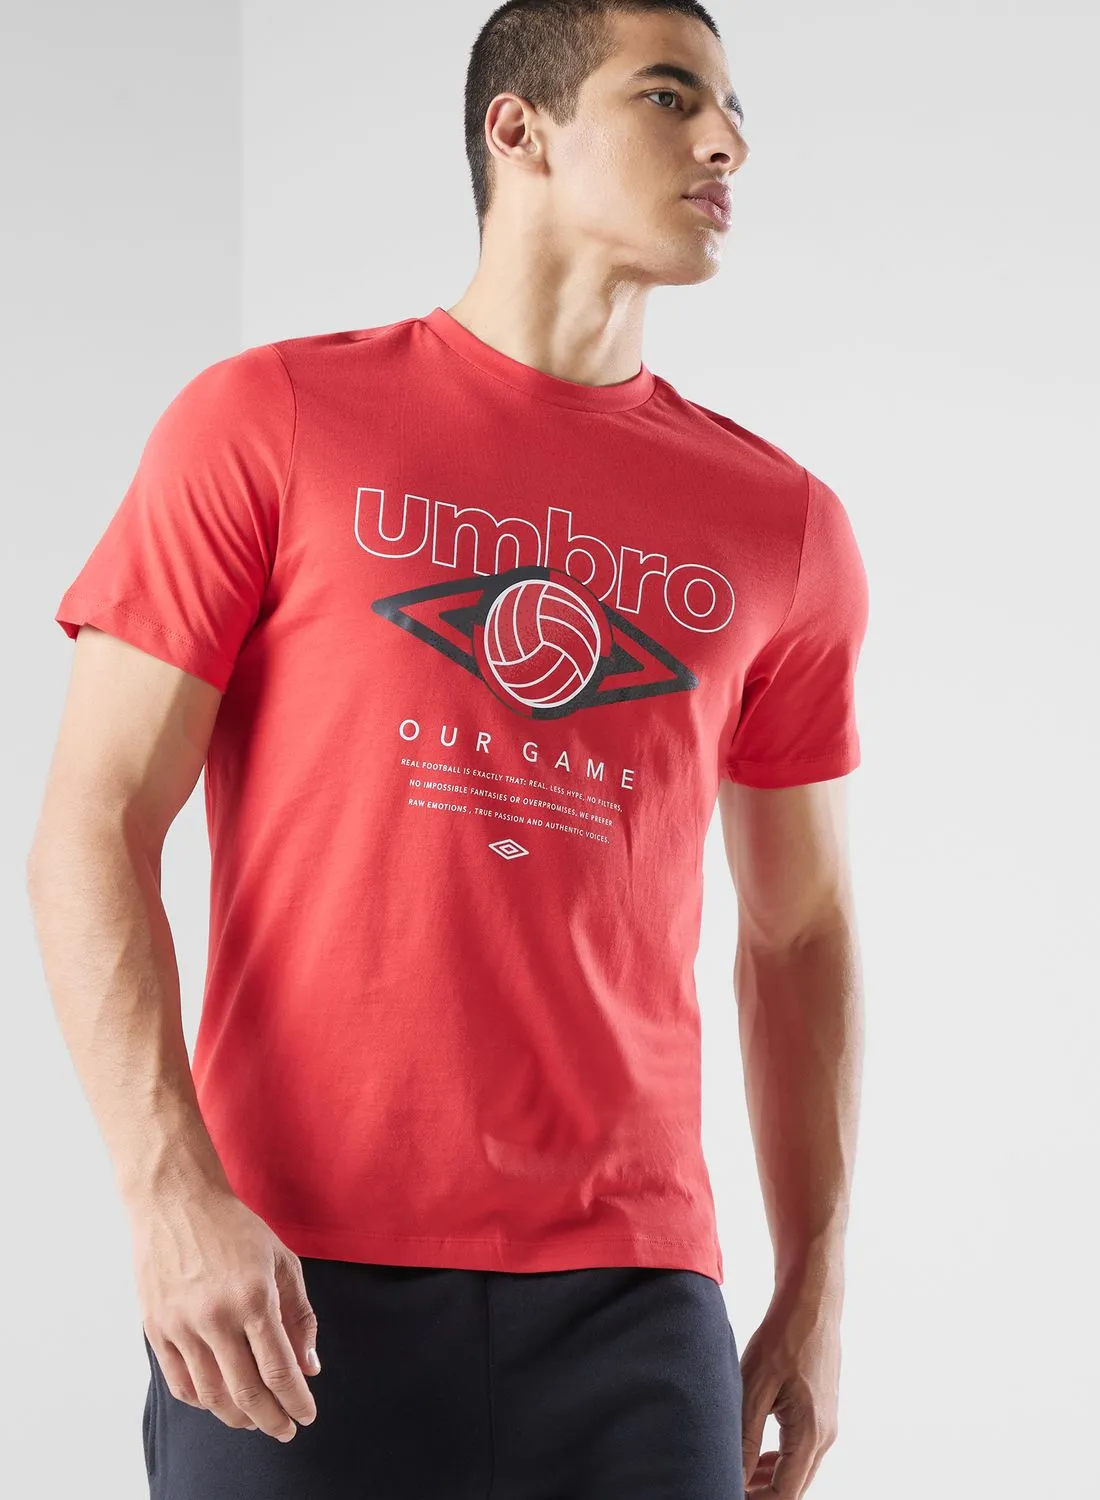 umbro Retro Graphic T-Shirt